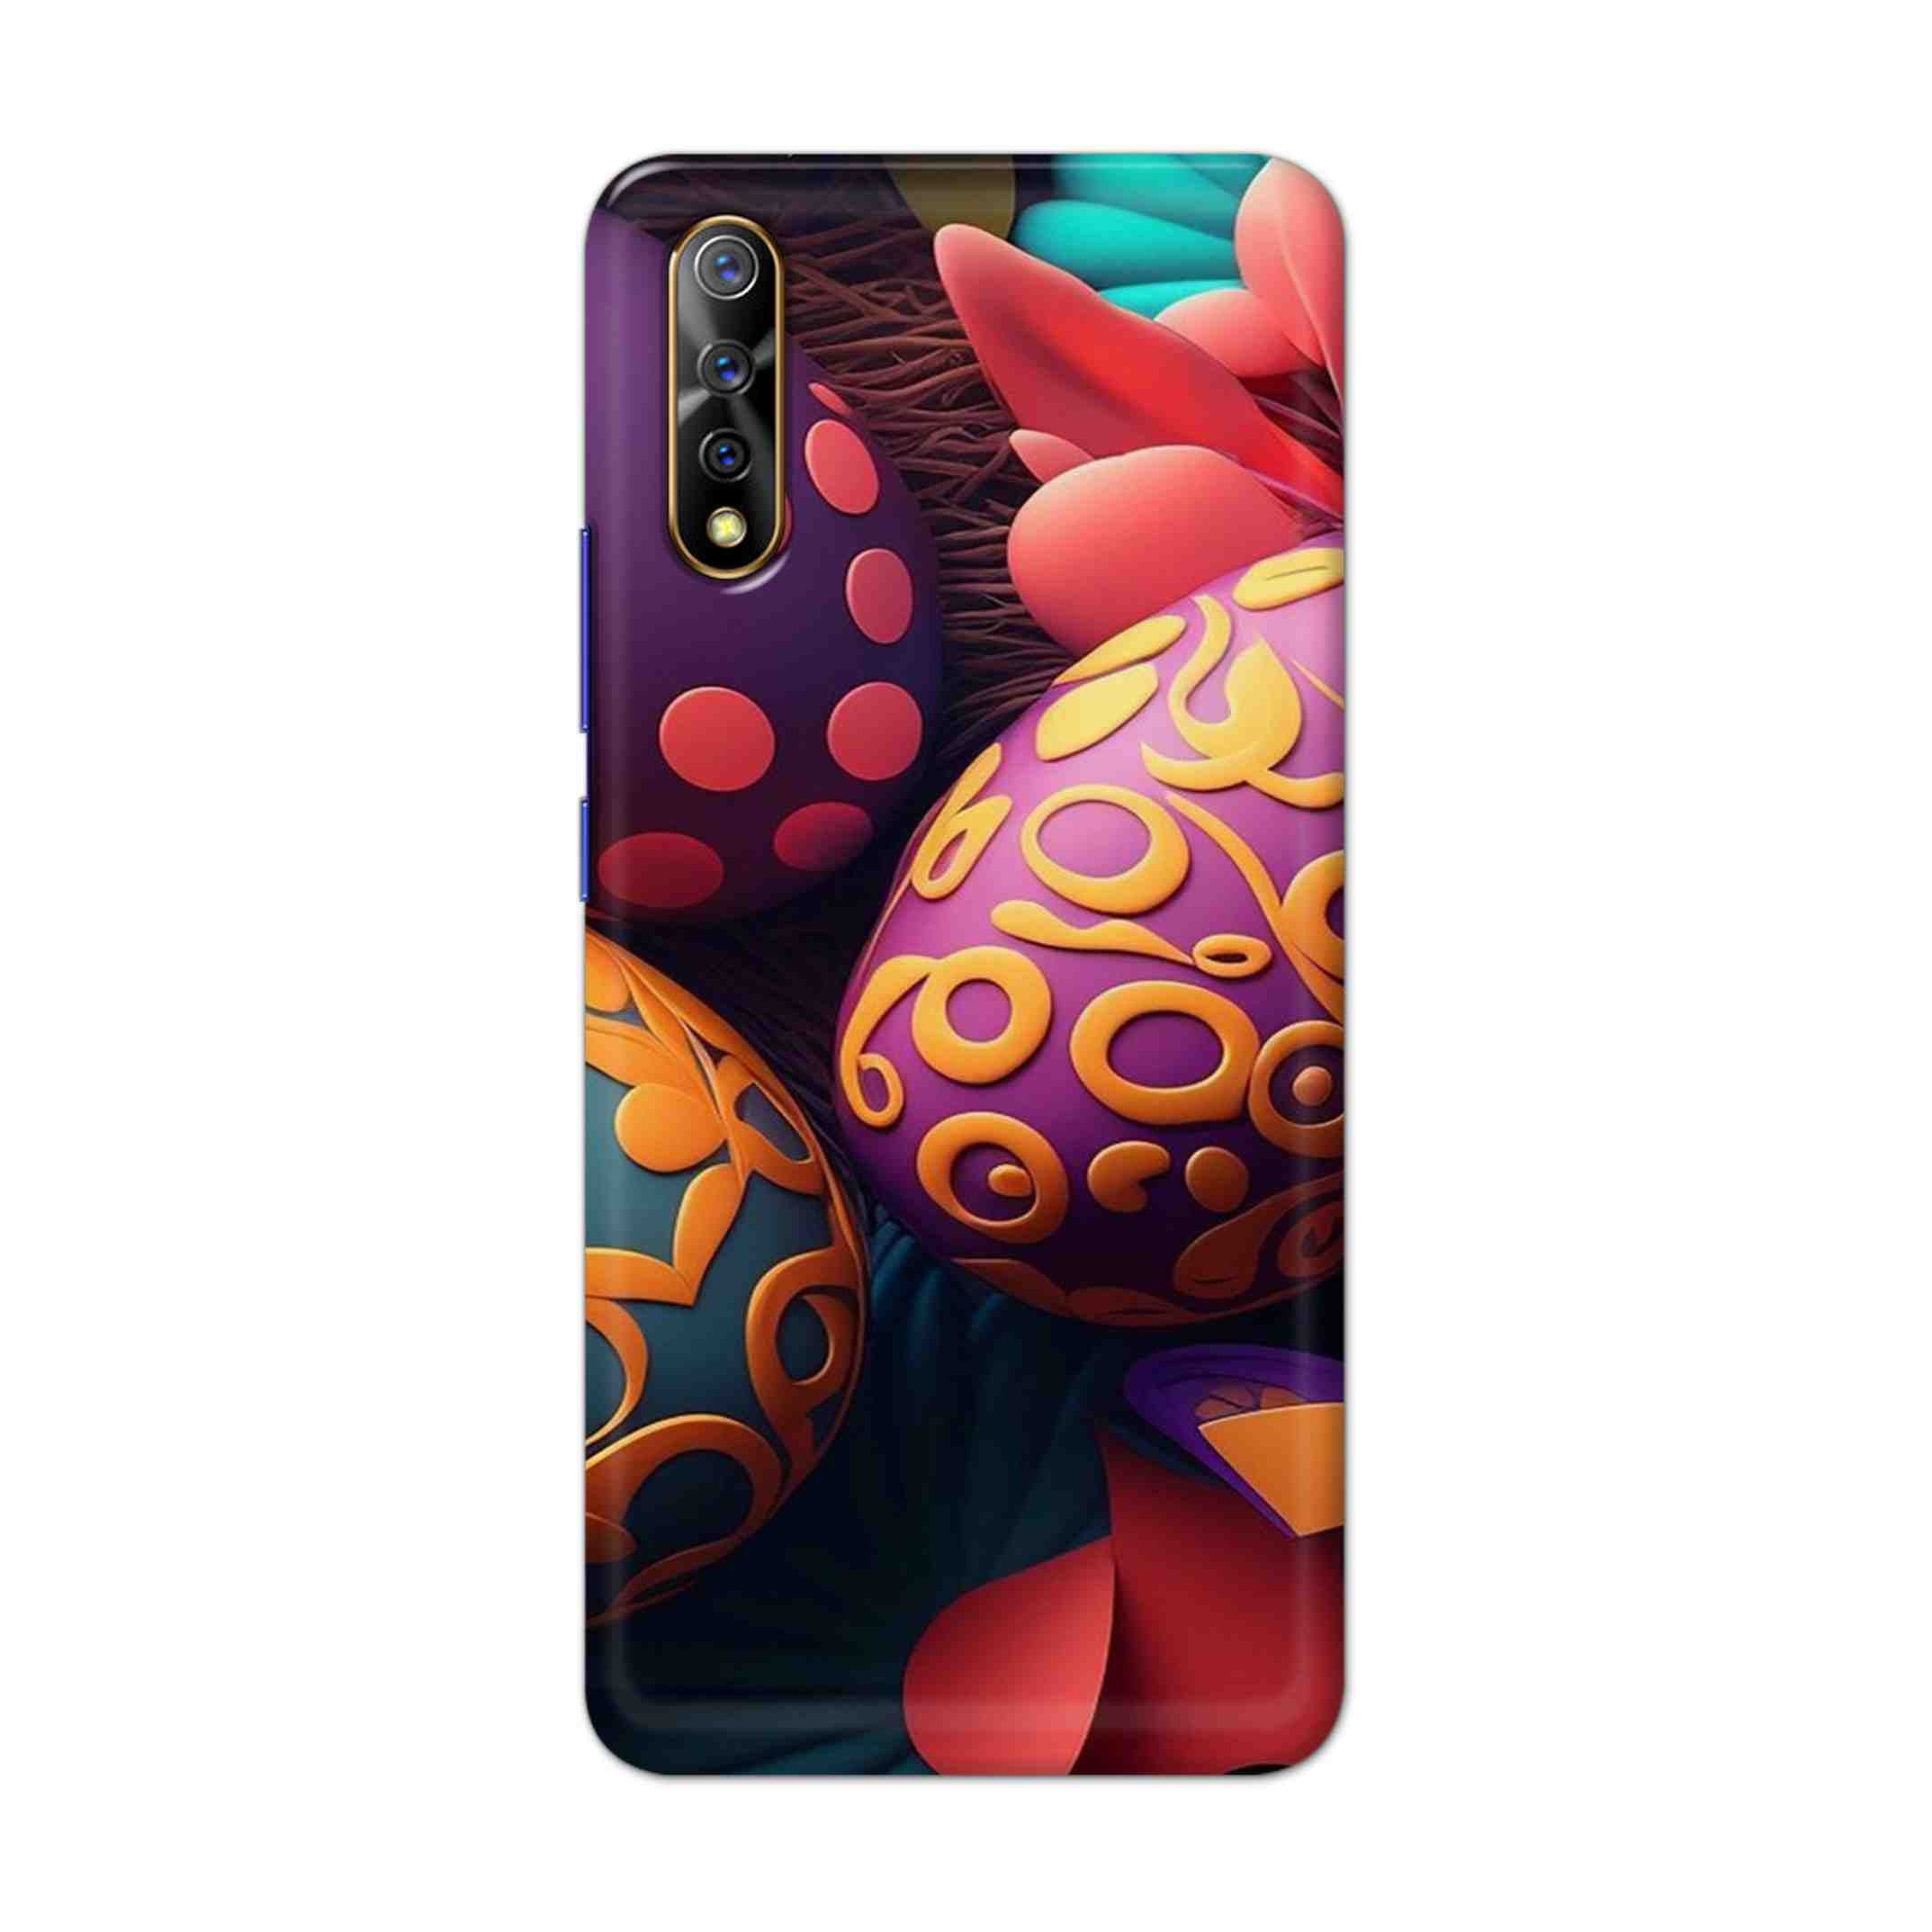 Buy Easter Egg Hard Back Mobile Phone Case Cover For Vivo S1 / Z1x Online